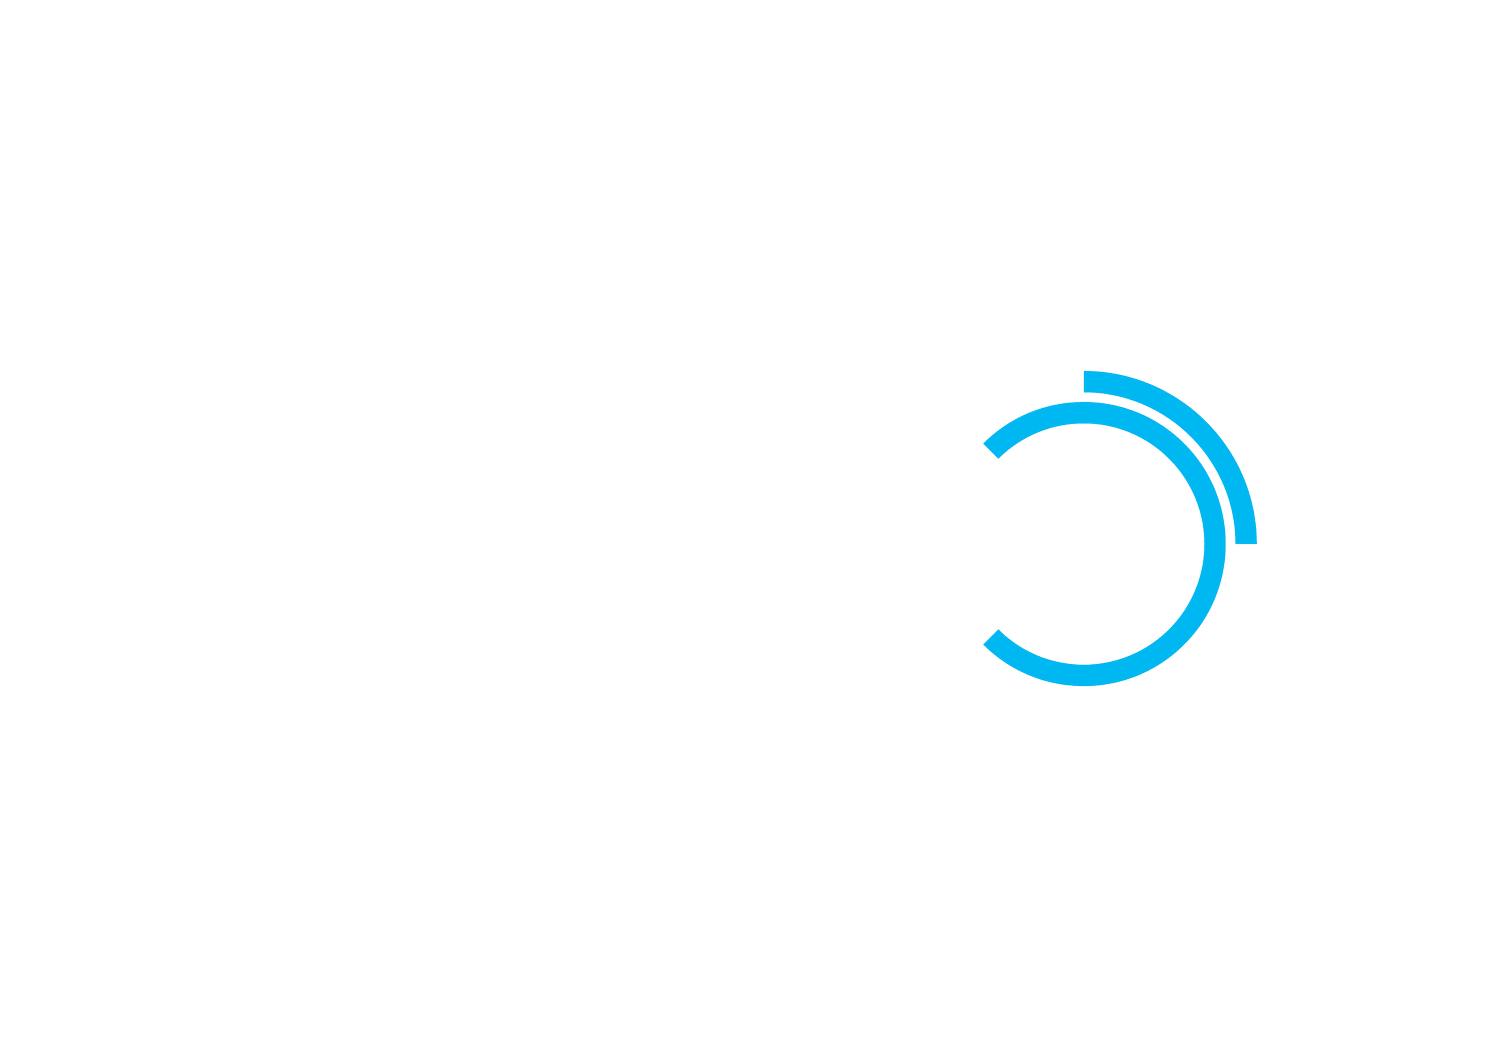 TradePex